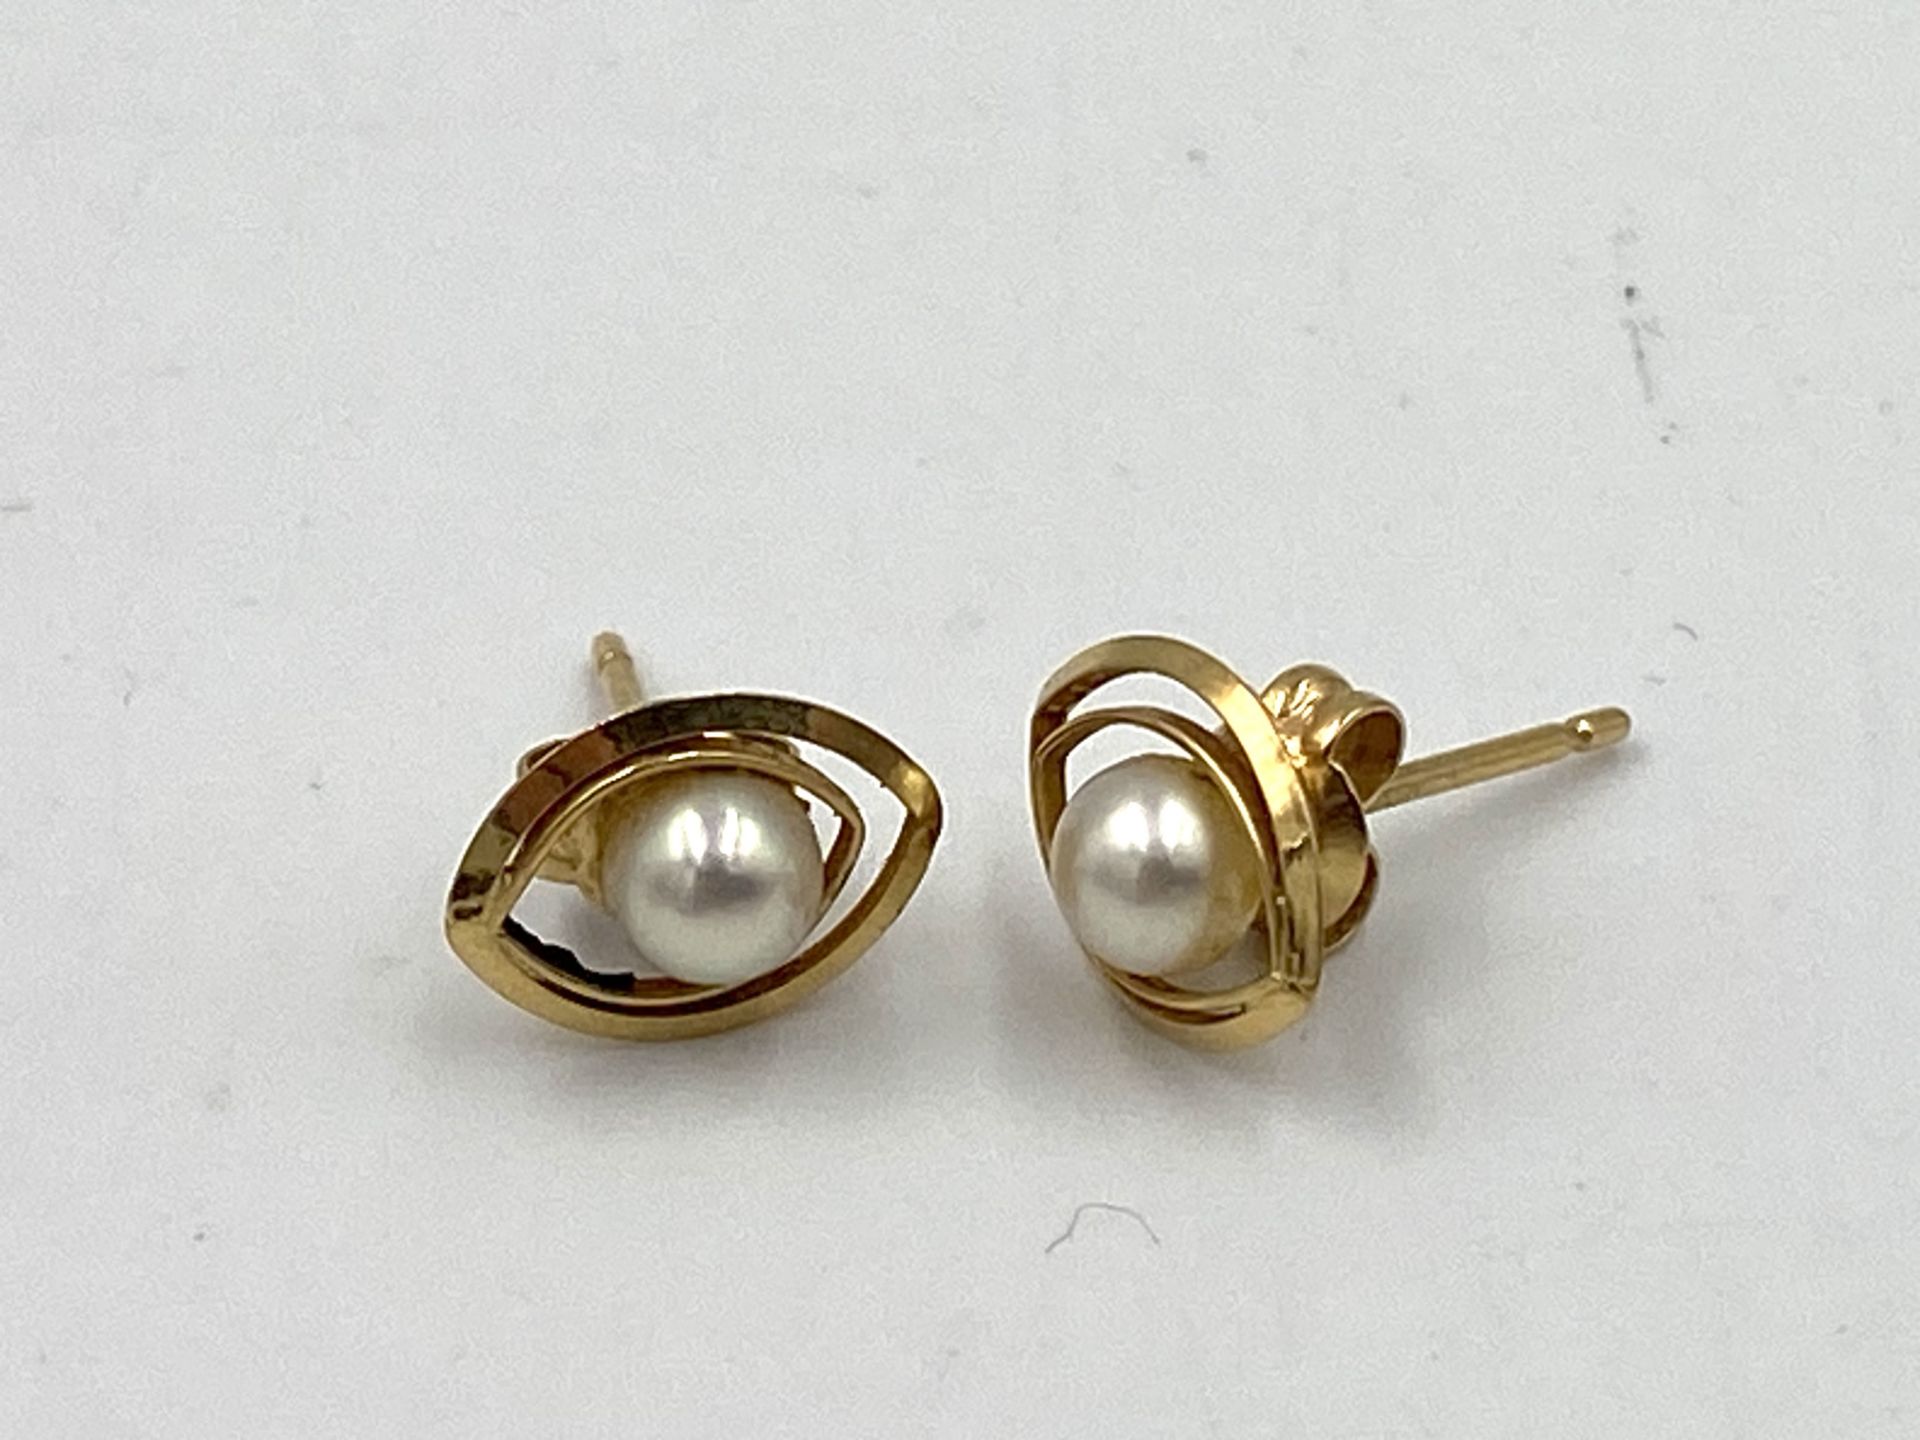 Pair of 18ct pearl earrings